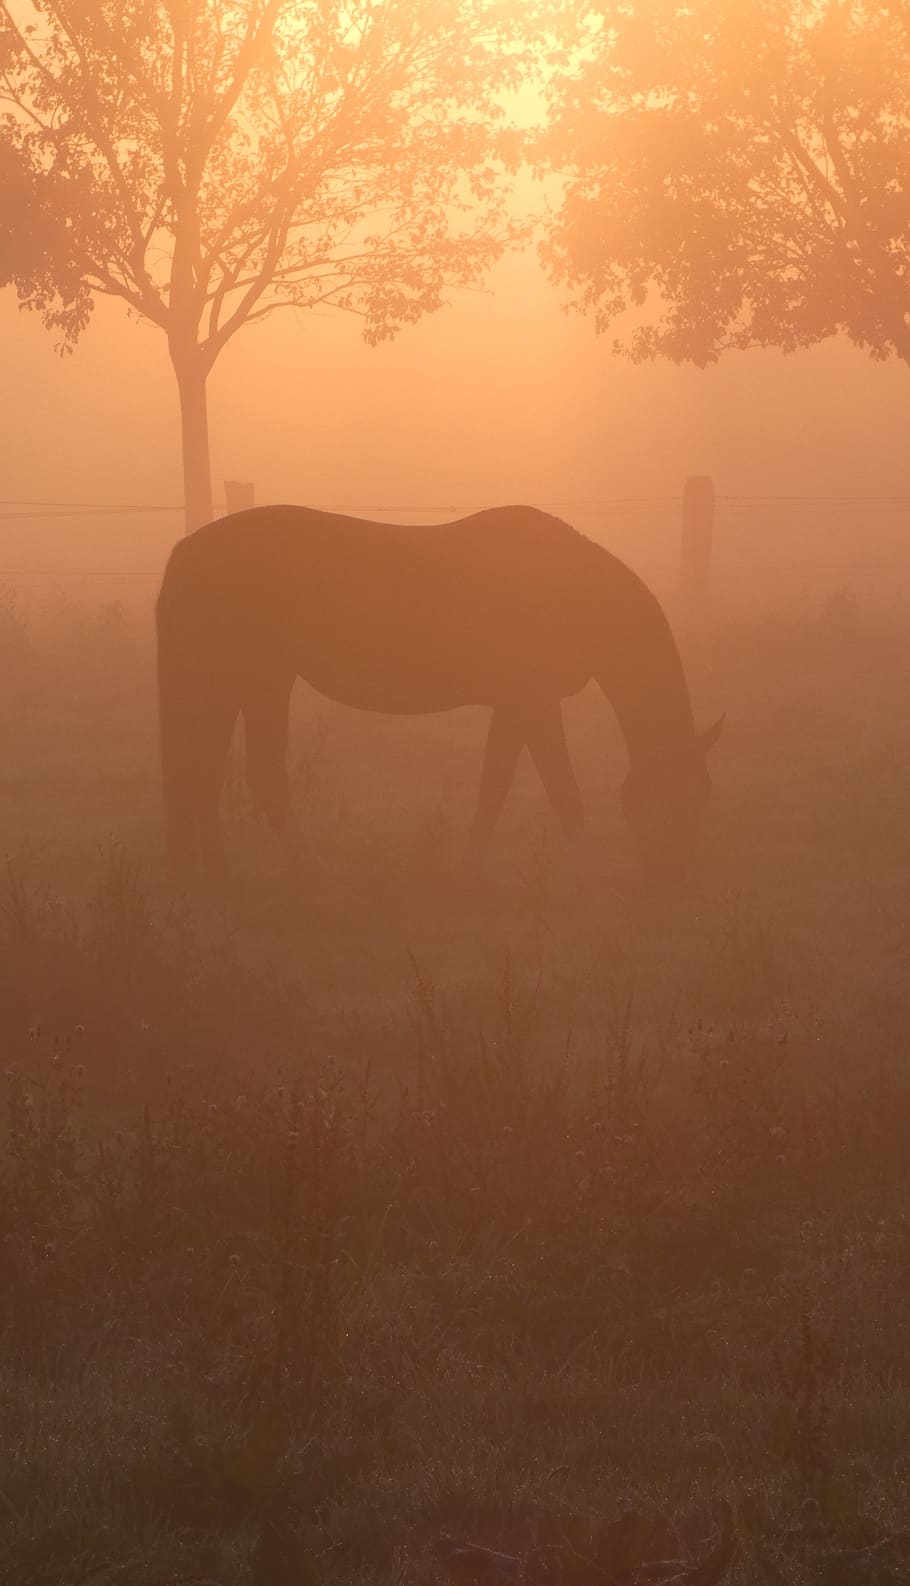 foto siluet, kuda, pohon, matahari pagi, lampu belakang, kabut, tergores, padang rumput, kopling, hewan